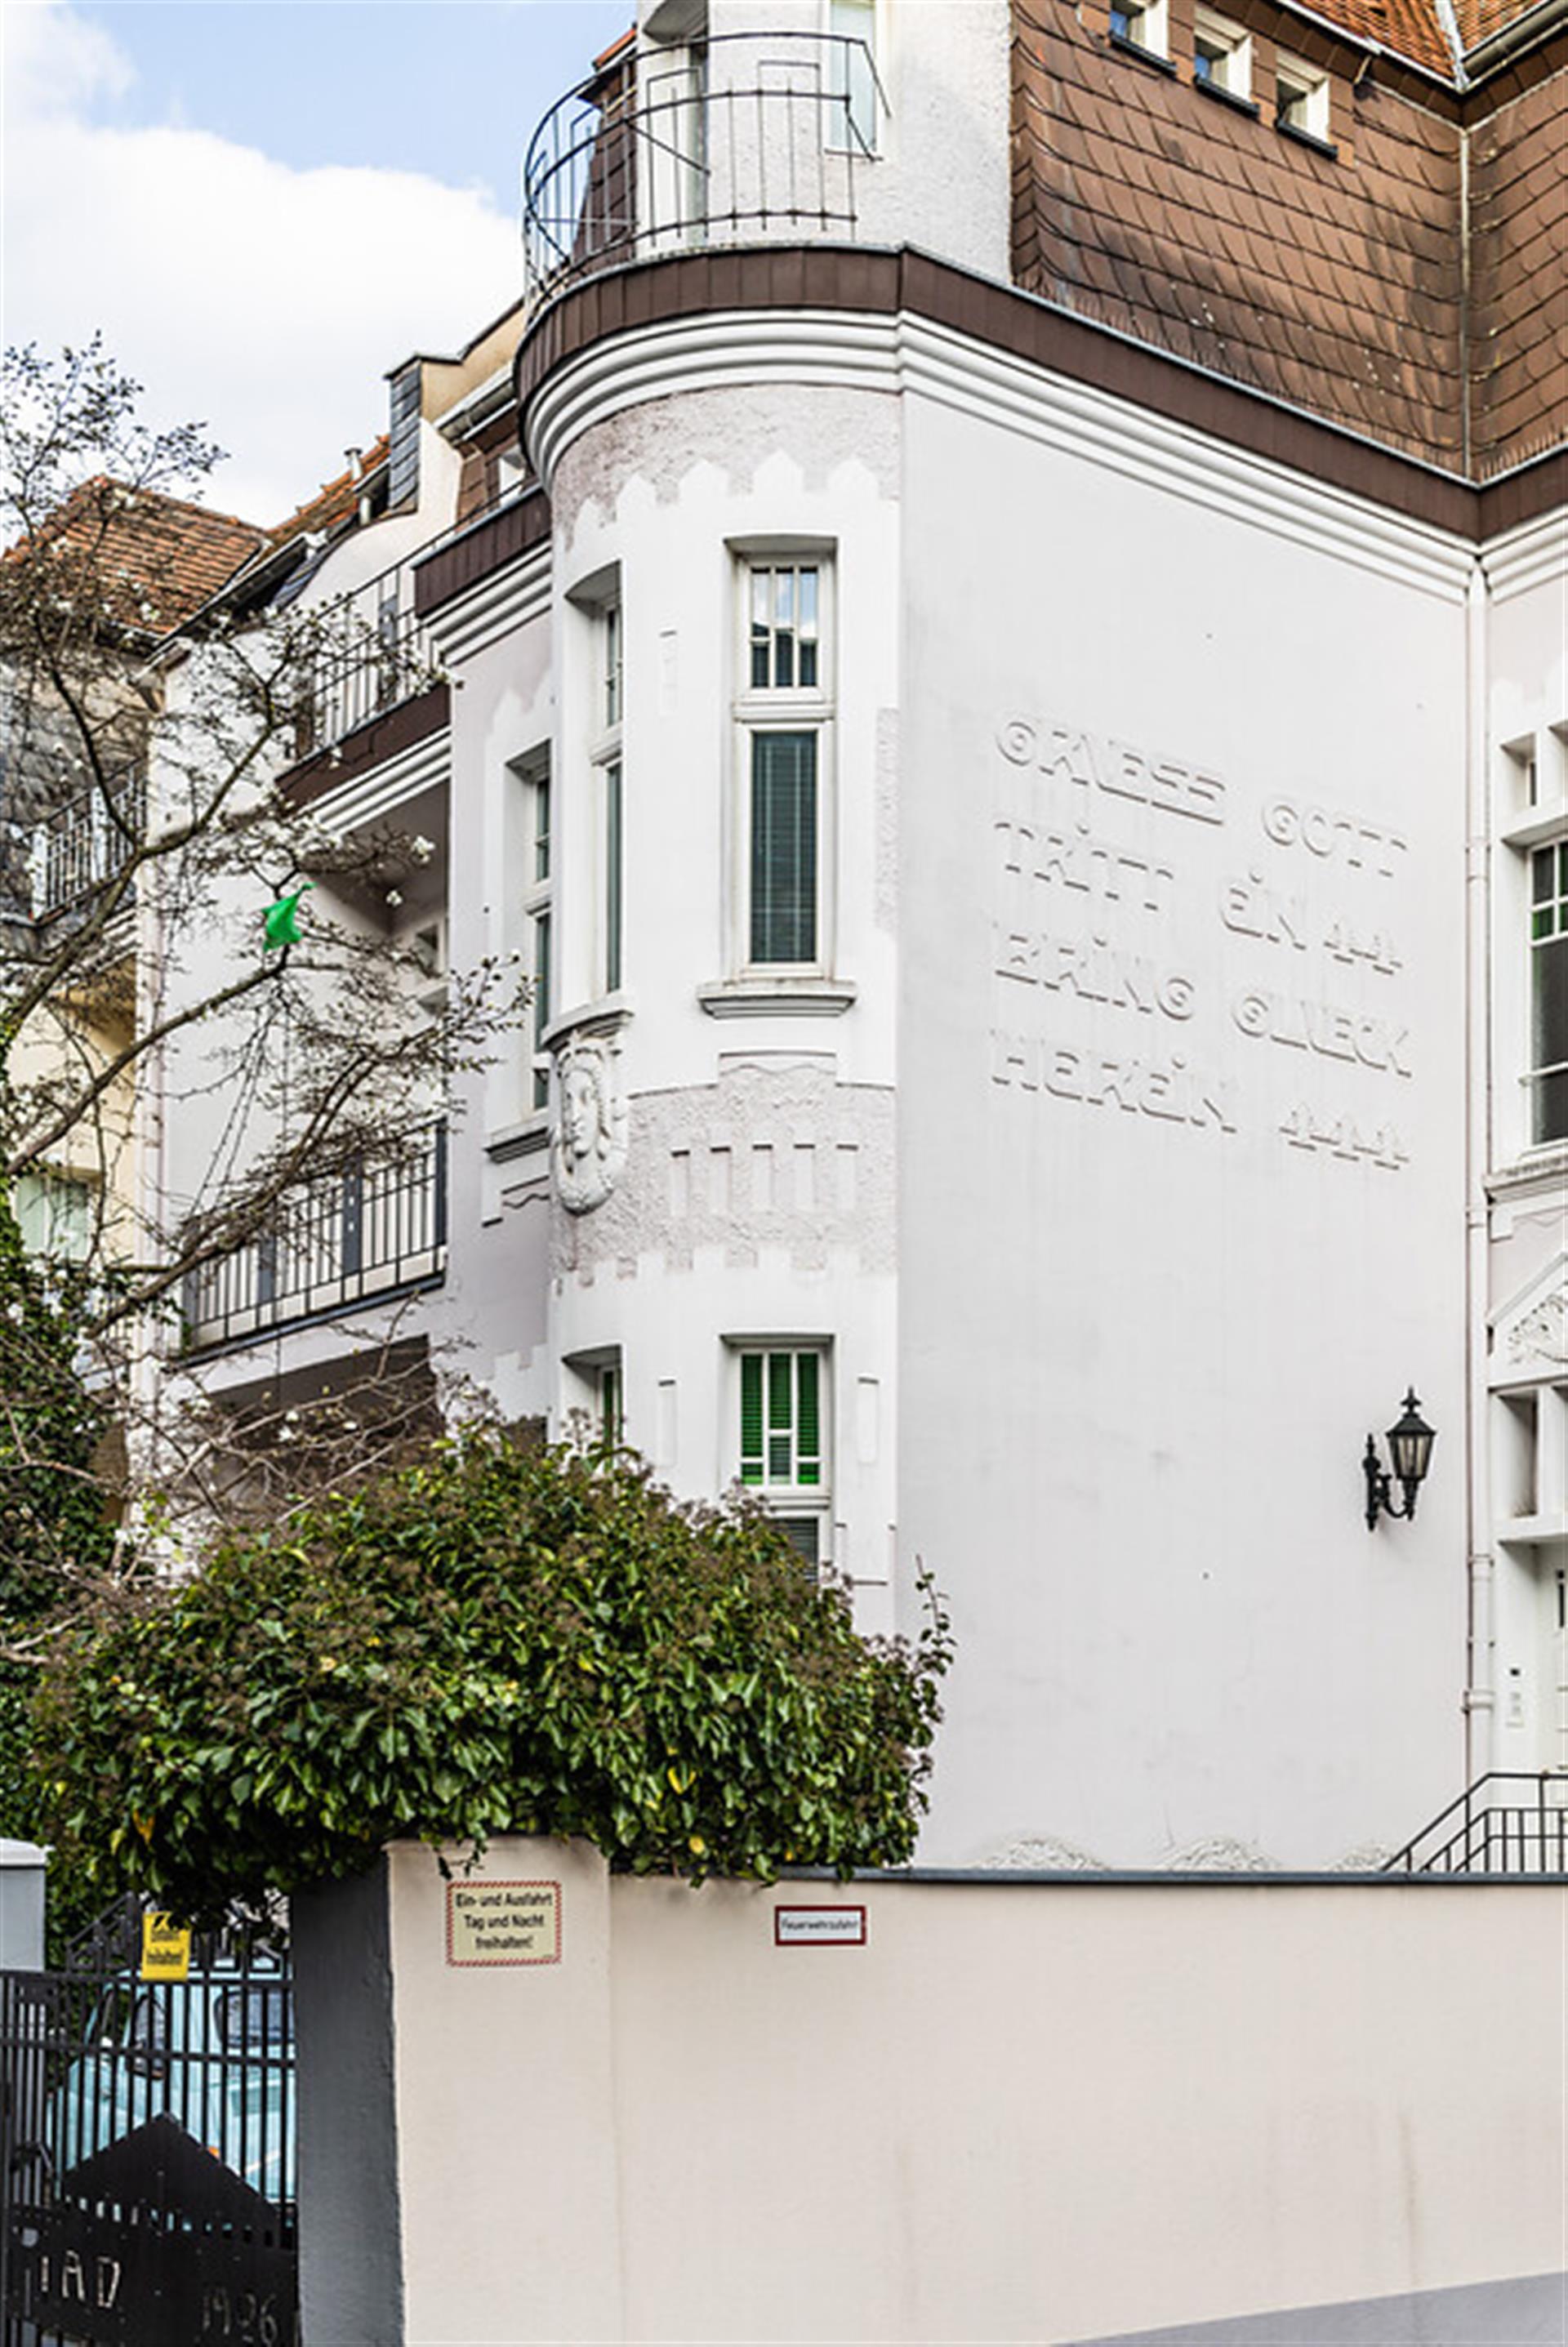 Wohnhaus in der Stammheimer Straße in Köln-Riehl (2022). Auf der Fassade steht geschrieben: "Gruess Gott tritt ein - Bring Glueck herein". &copy; Sebastian Löder / CC-BY 4.0